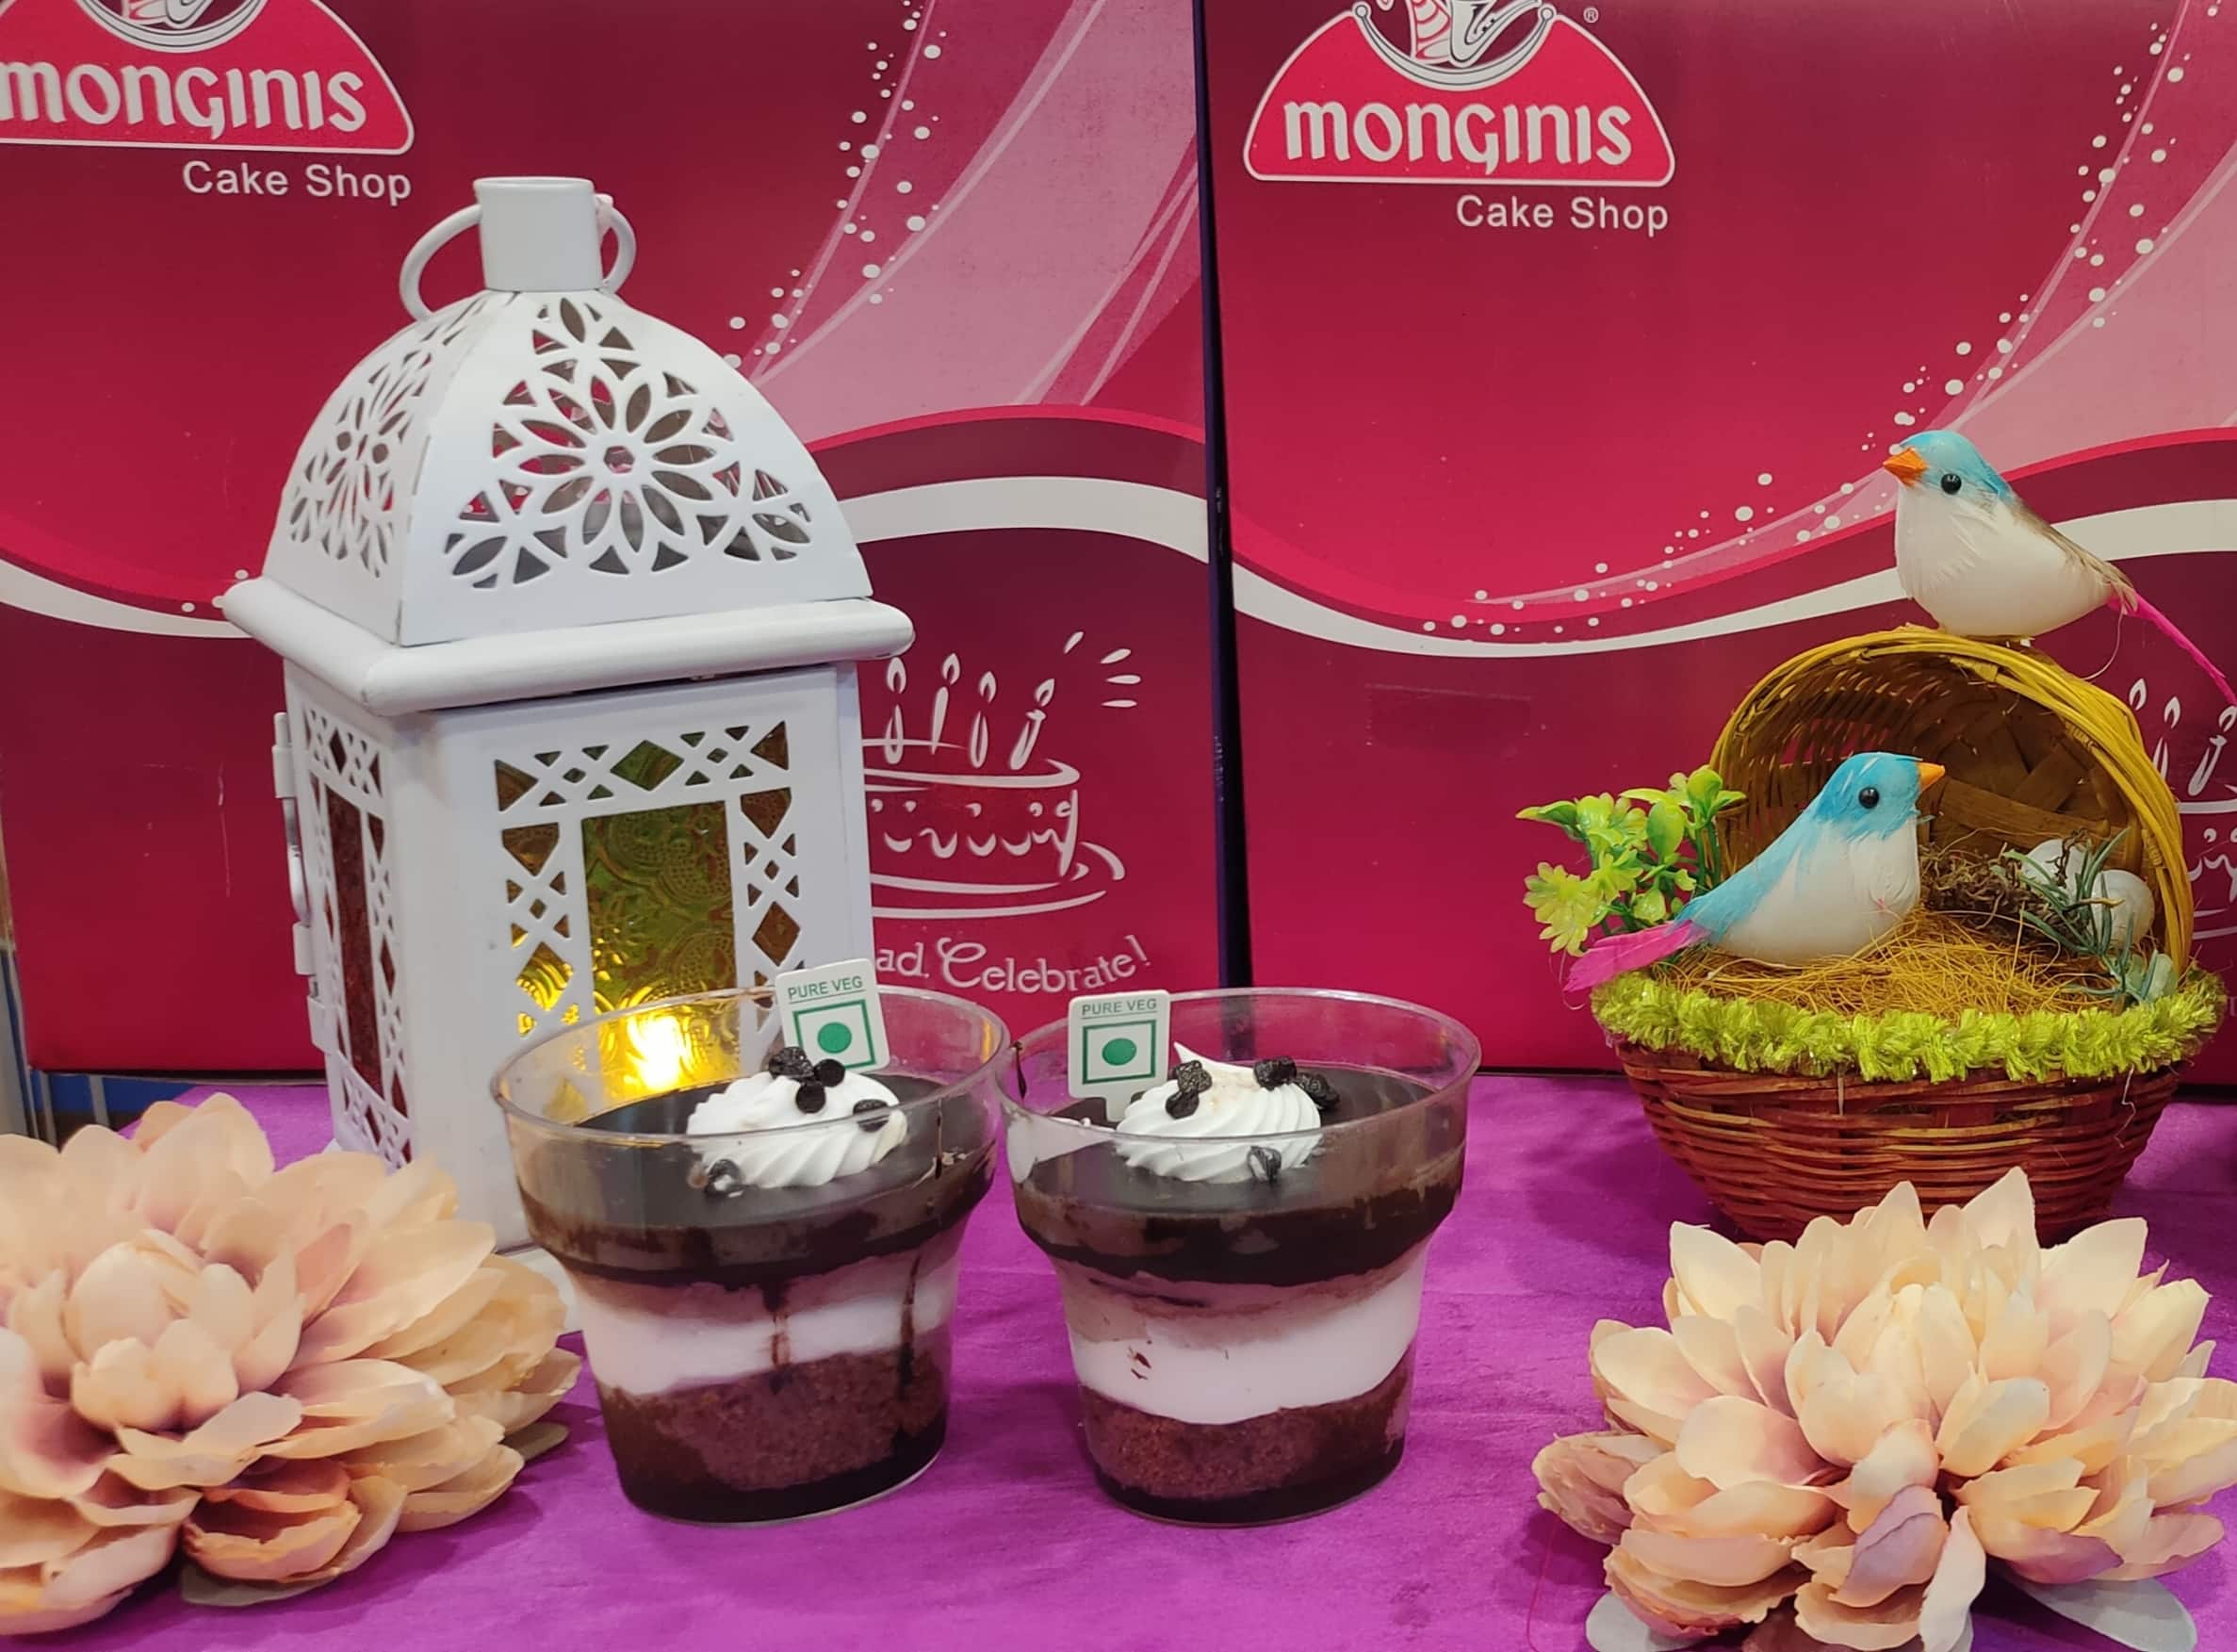 MONGINIS CAKE SHOP , CHIKHALI PUNE - Order Online